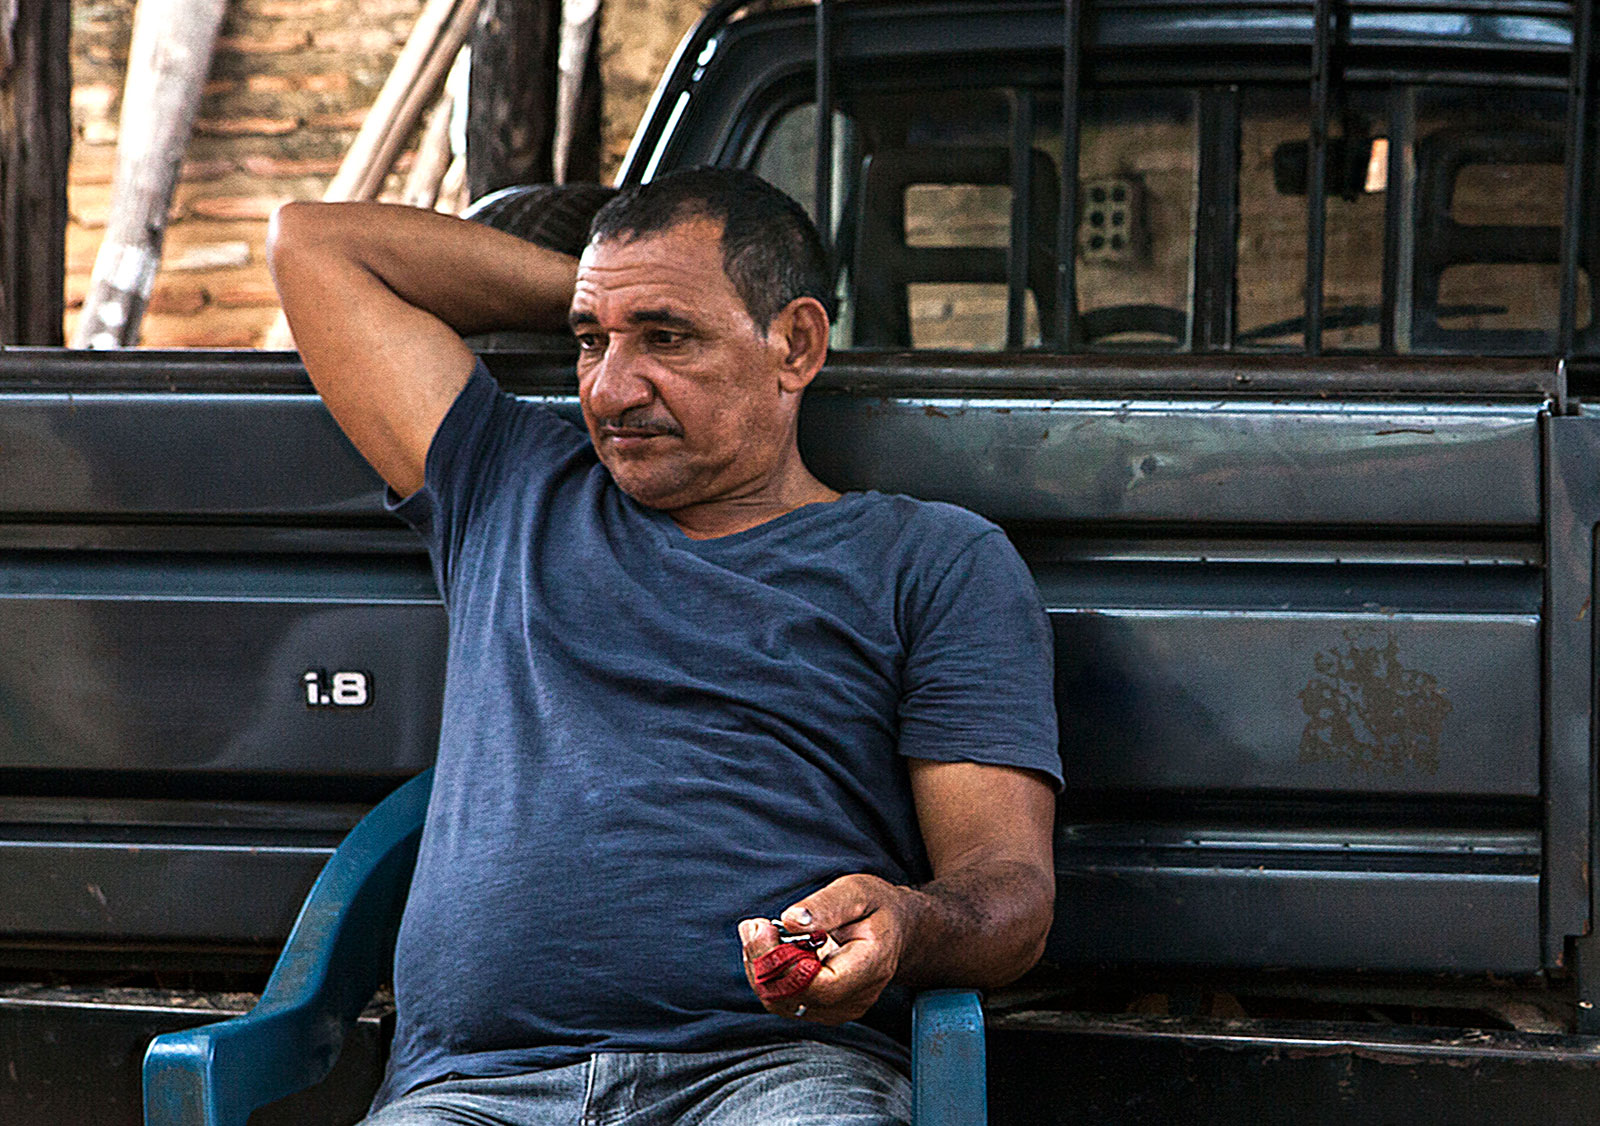 Antônio lembra quando cortava cana em São Paulo, ganhando por produtividade: “Conheci um lá que tirava 22 toneladas por dia. Só que ele viveu pouco”. Foto: Lilo Clareto/Repórter Brasil